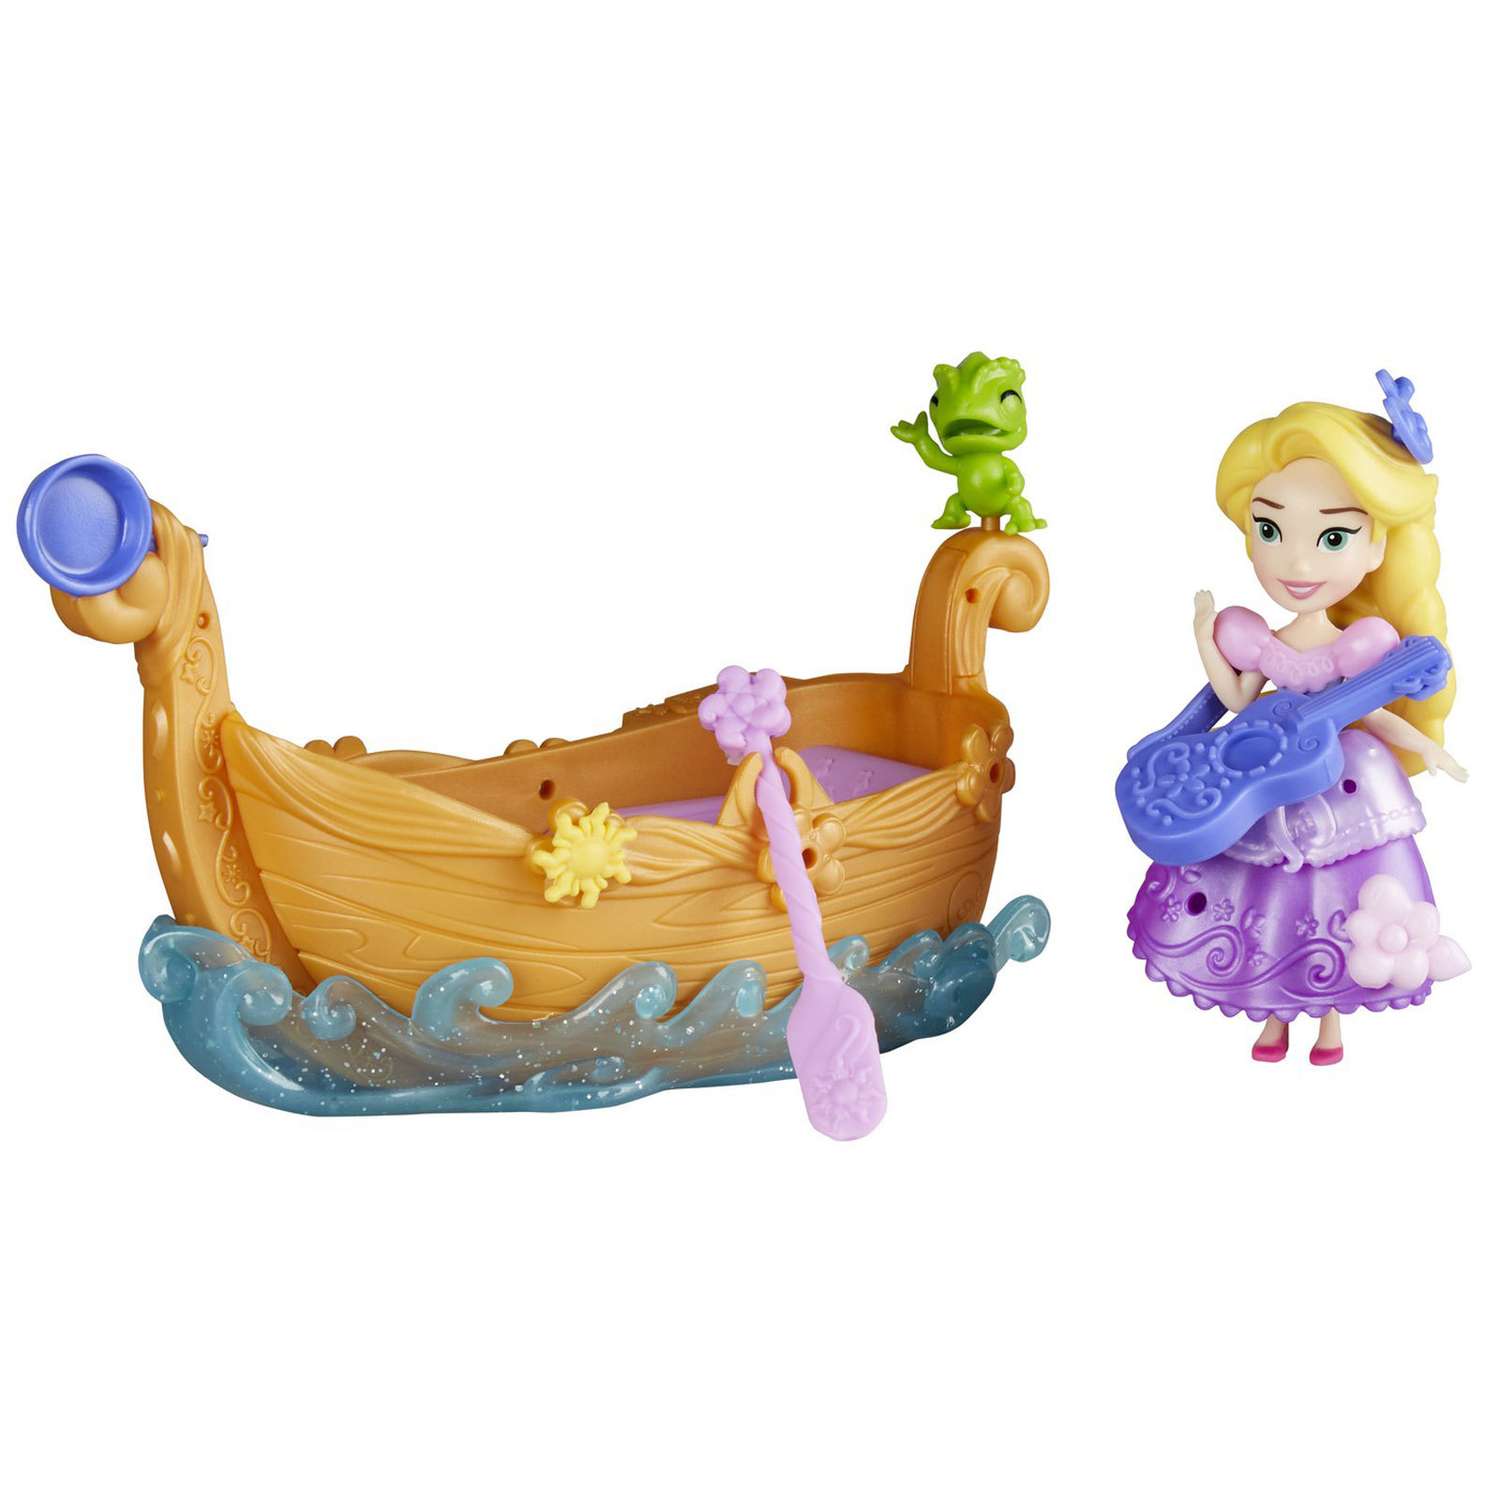 Набор Princess Disney Фигурка и лодка в ассортименте E0068EU4 E0068EU4 - фото 3